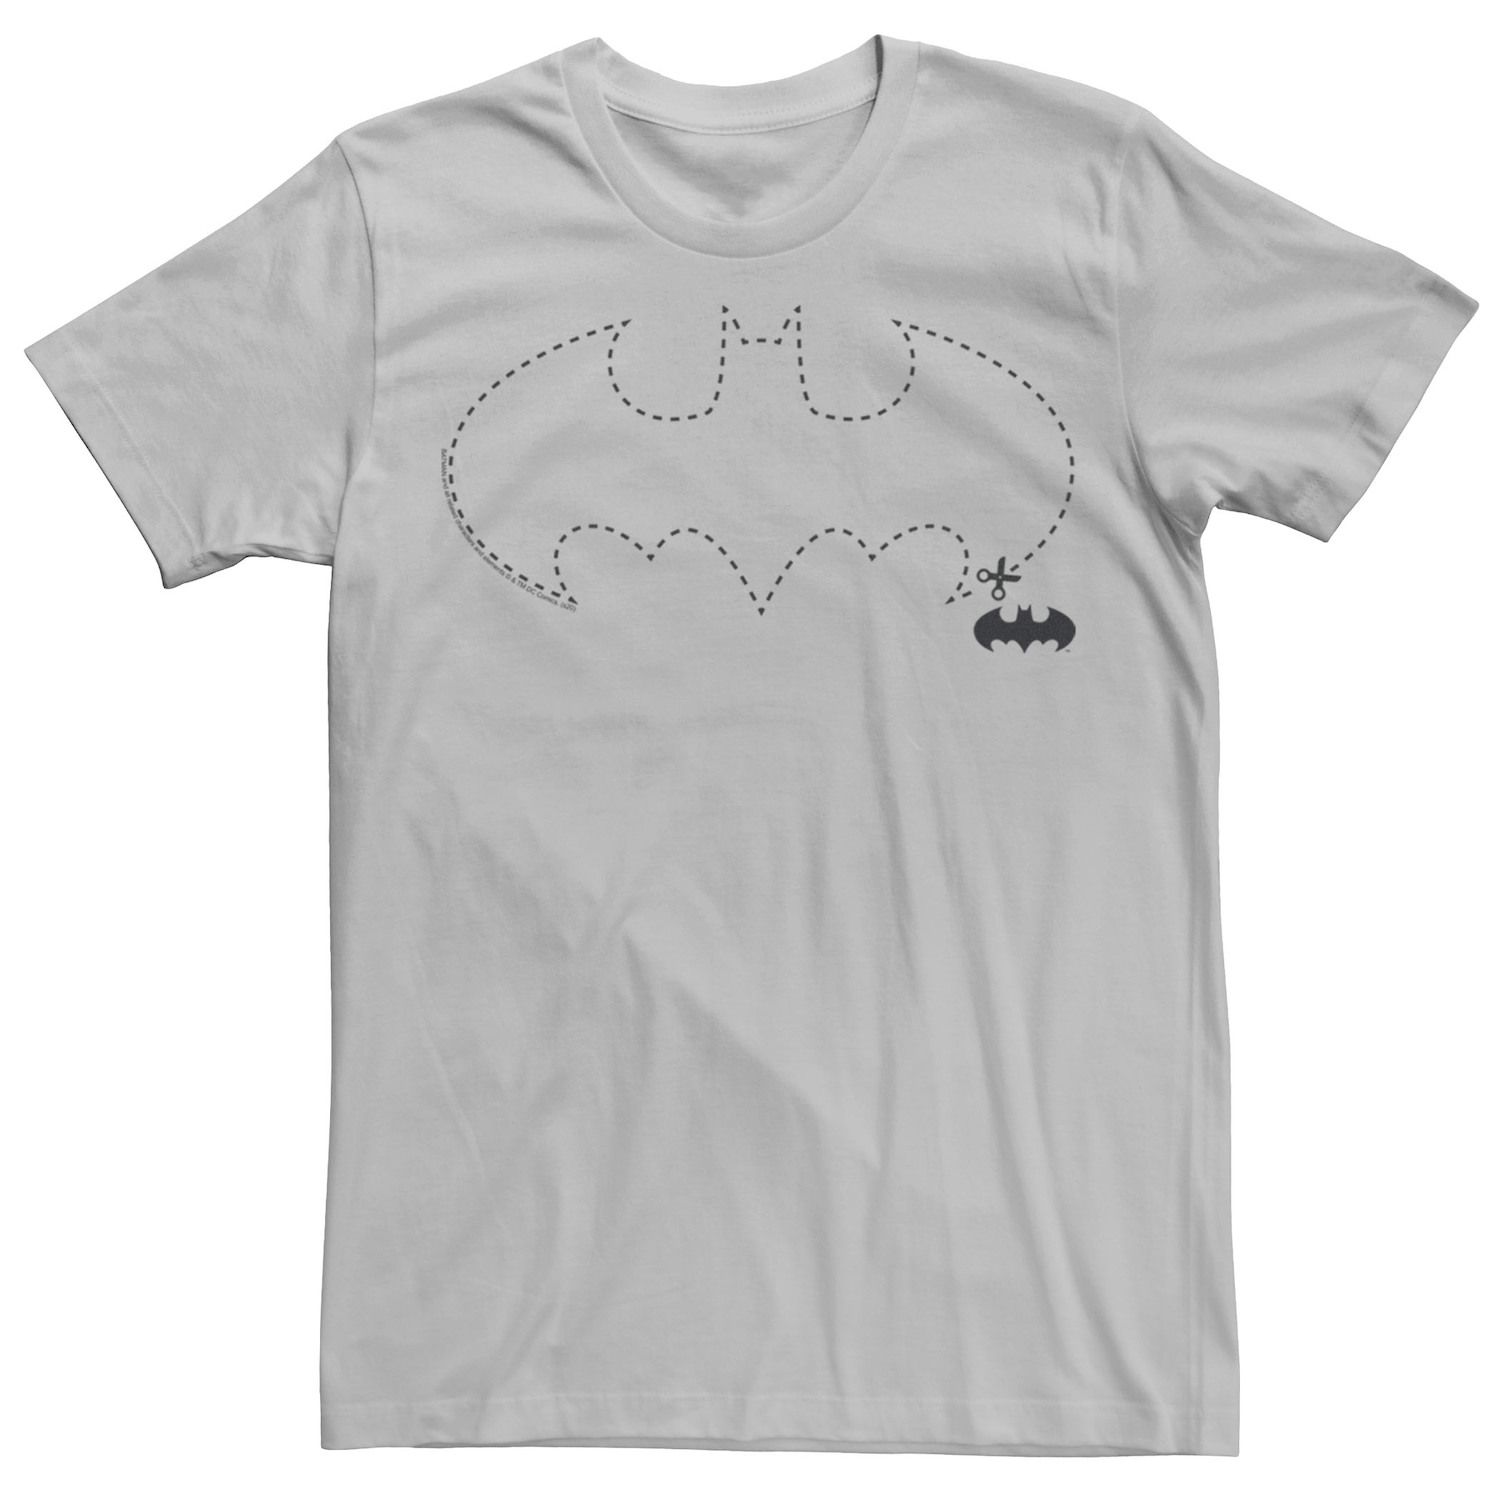 Мужская футболка с логотипом DC Fandome Batman Starry Batman Licensed Character